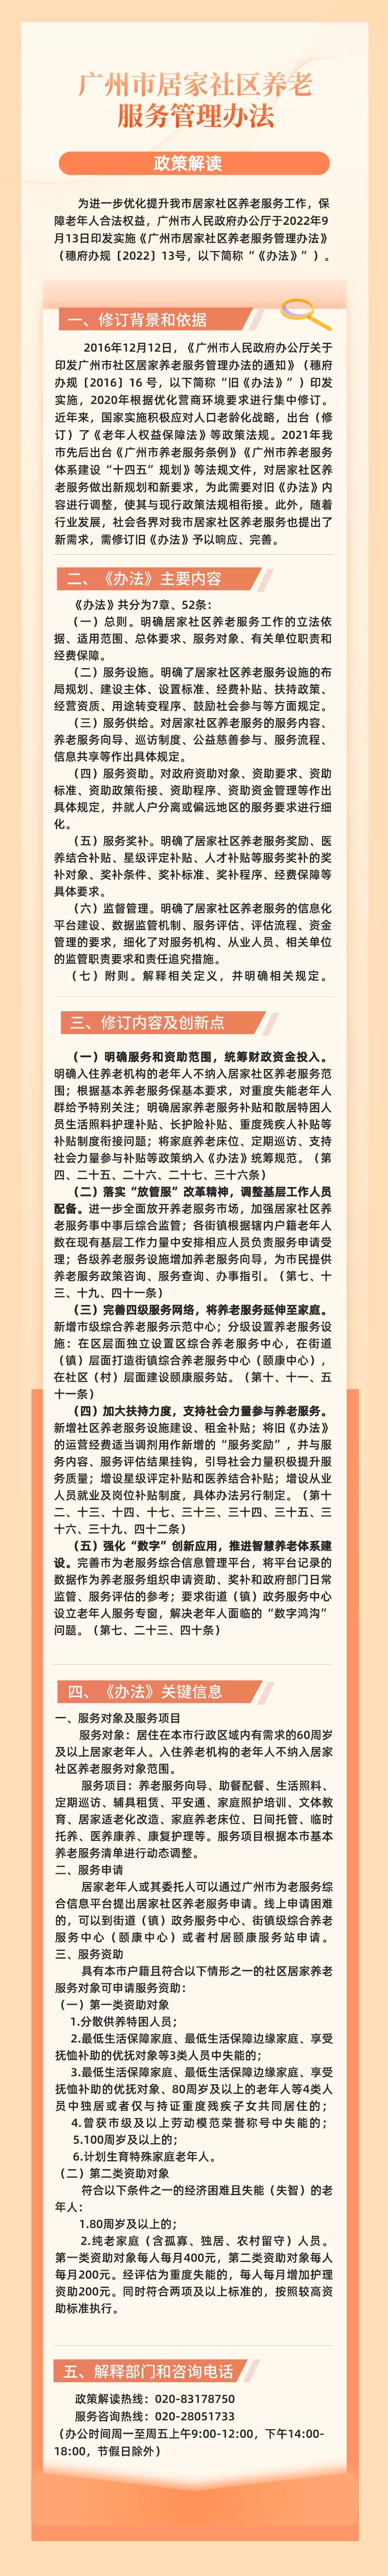 【一图读懂】《广州市居家社区养老服务管理办法》.jpeg